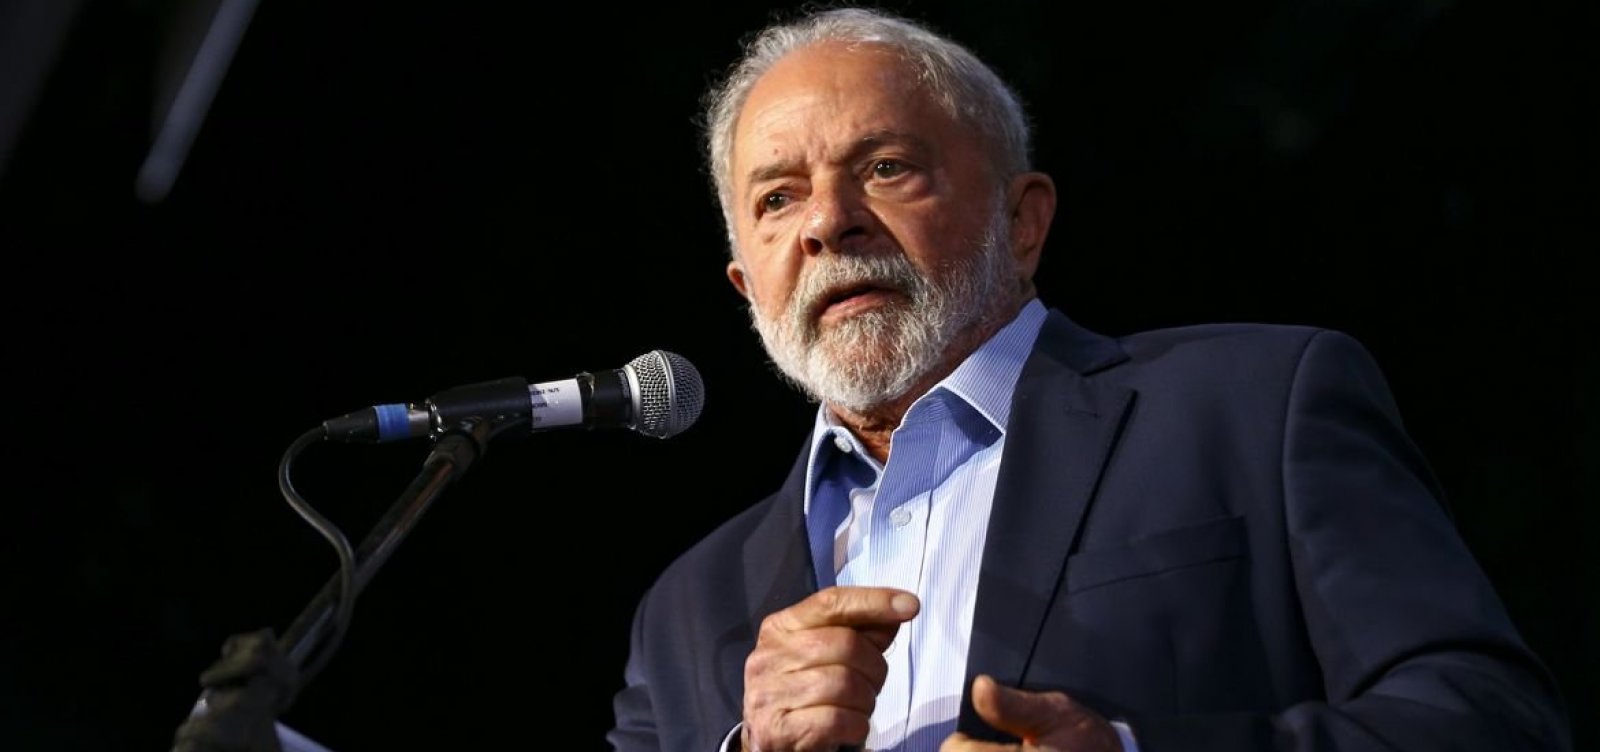 Novos registros de posse de armas caem no primeiro ano do governo Lula